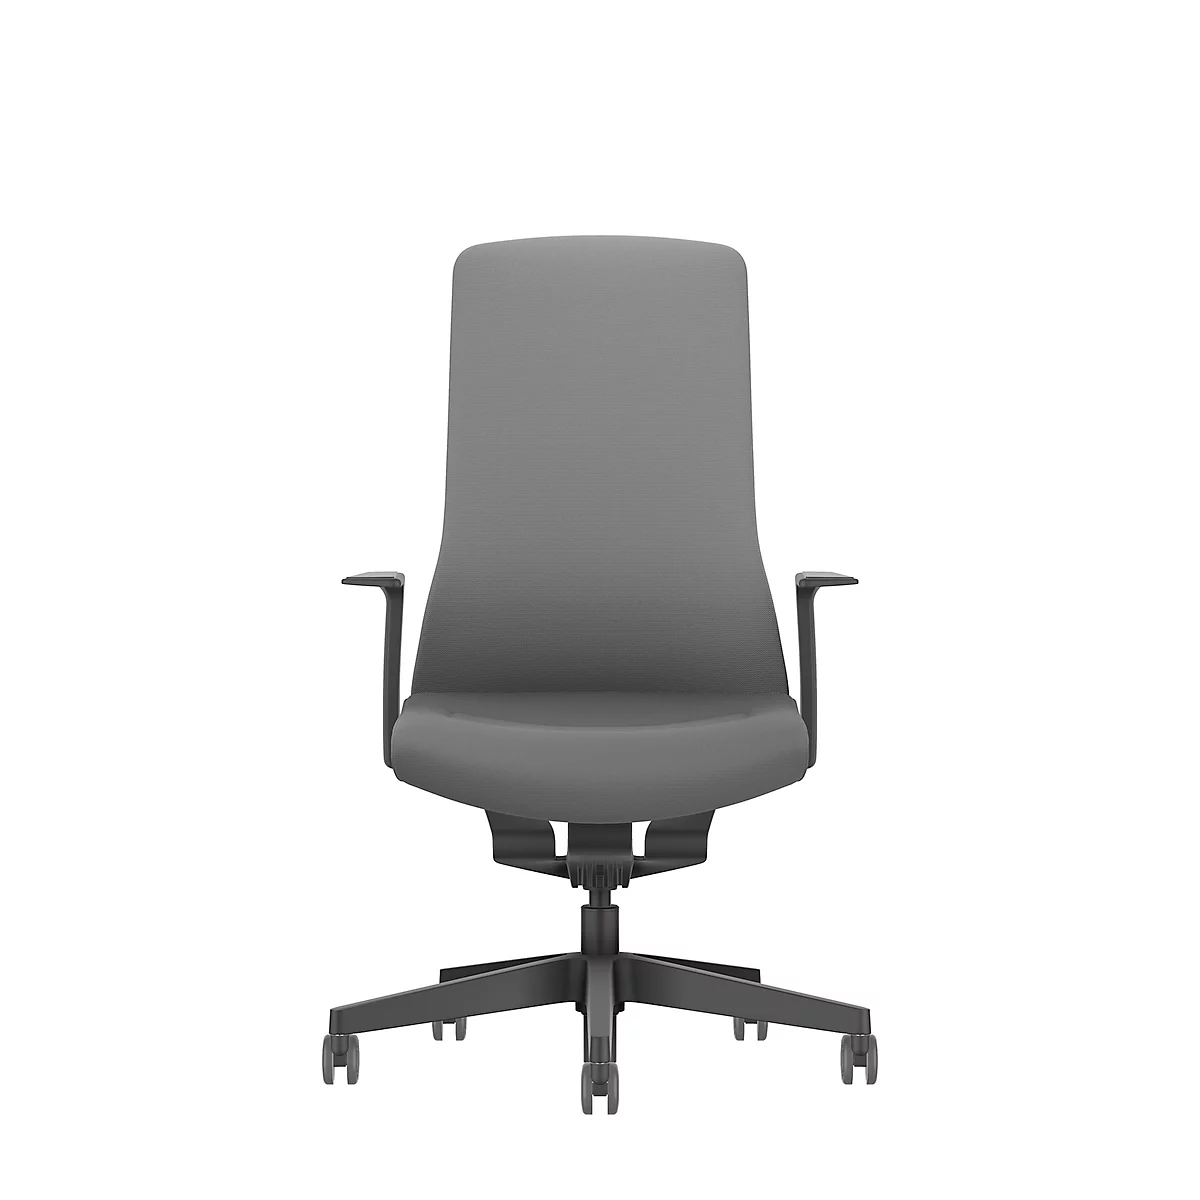 Interstuhl bureaustoel PUREis3, vaste armleuningen, 3D auto-synchroonmechanisme, kuipzitting, gestoffeerde rug, ijzergrijs/zwart